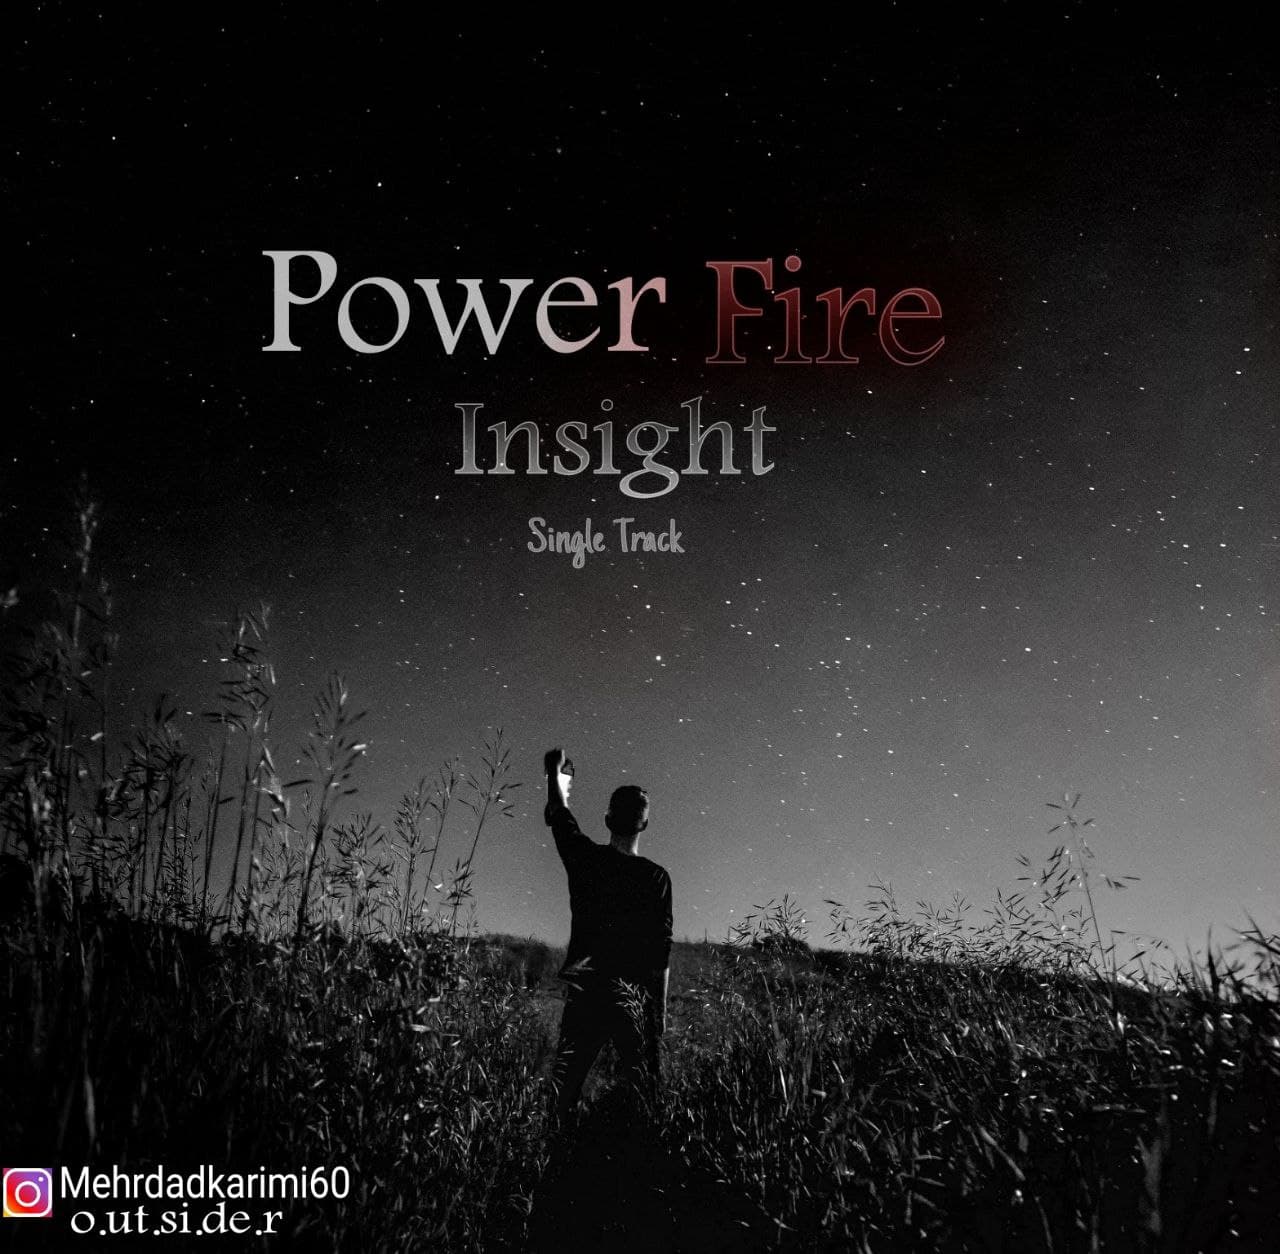 Power Fire Insight